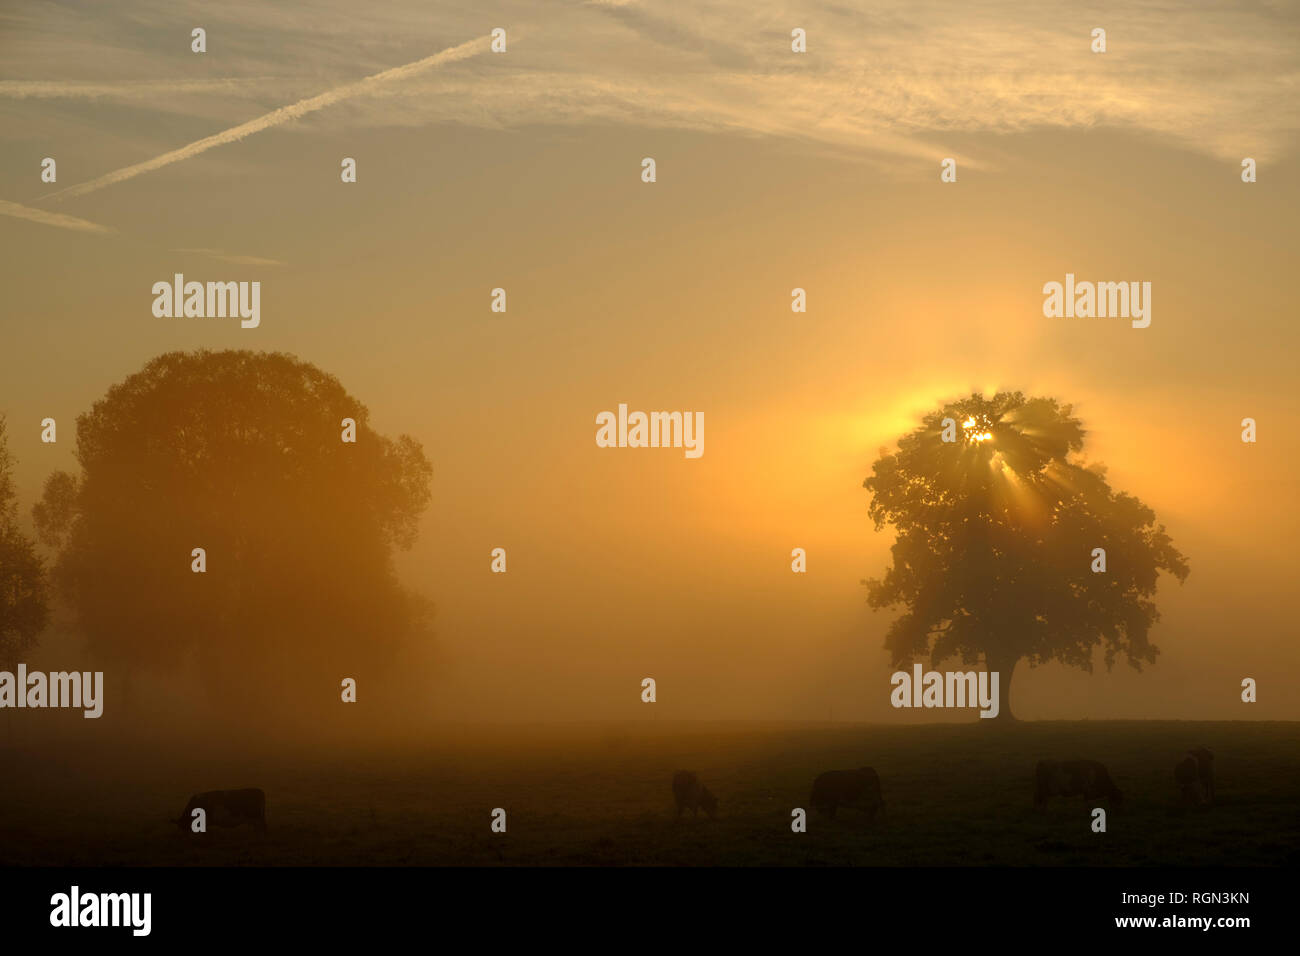 Germania, Pfaffenwinkel, vista del paesaggio con due alberi di sunrise Foto Stock